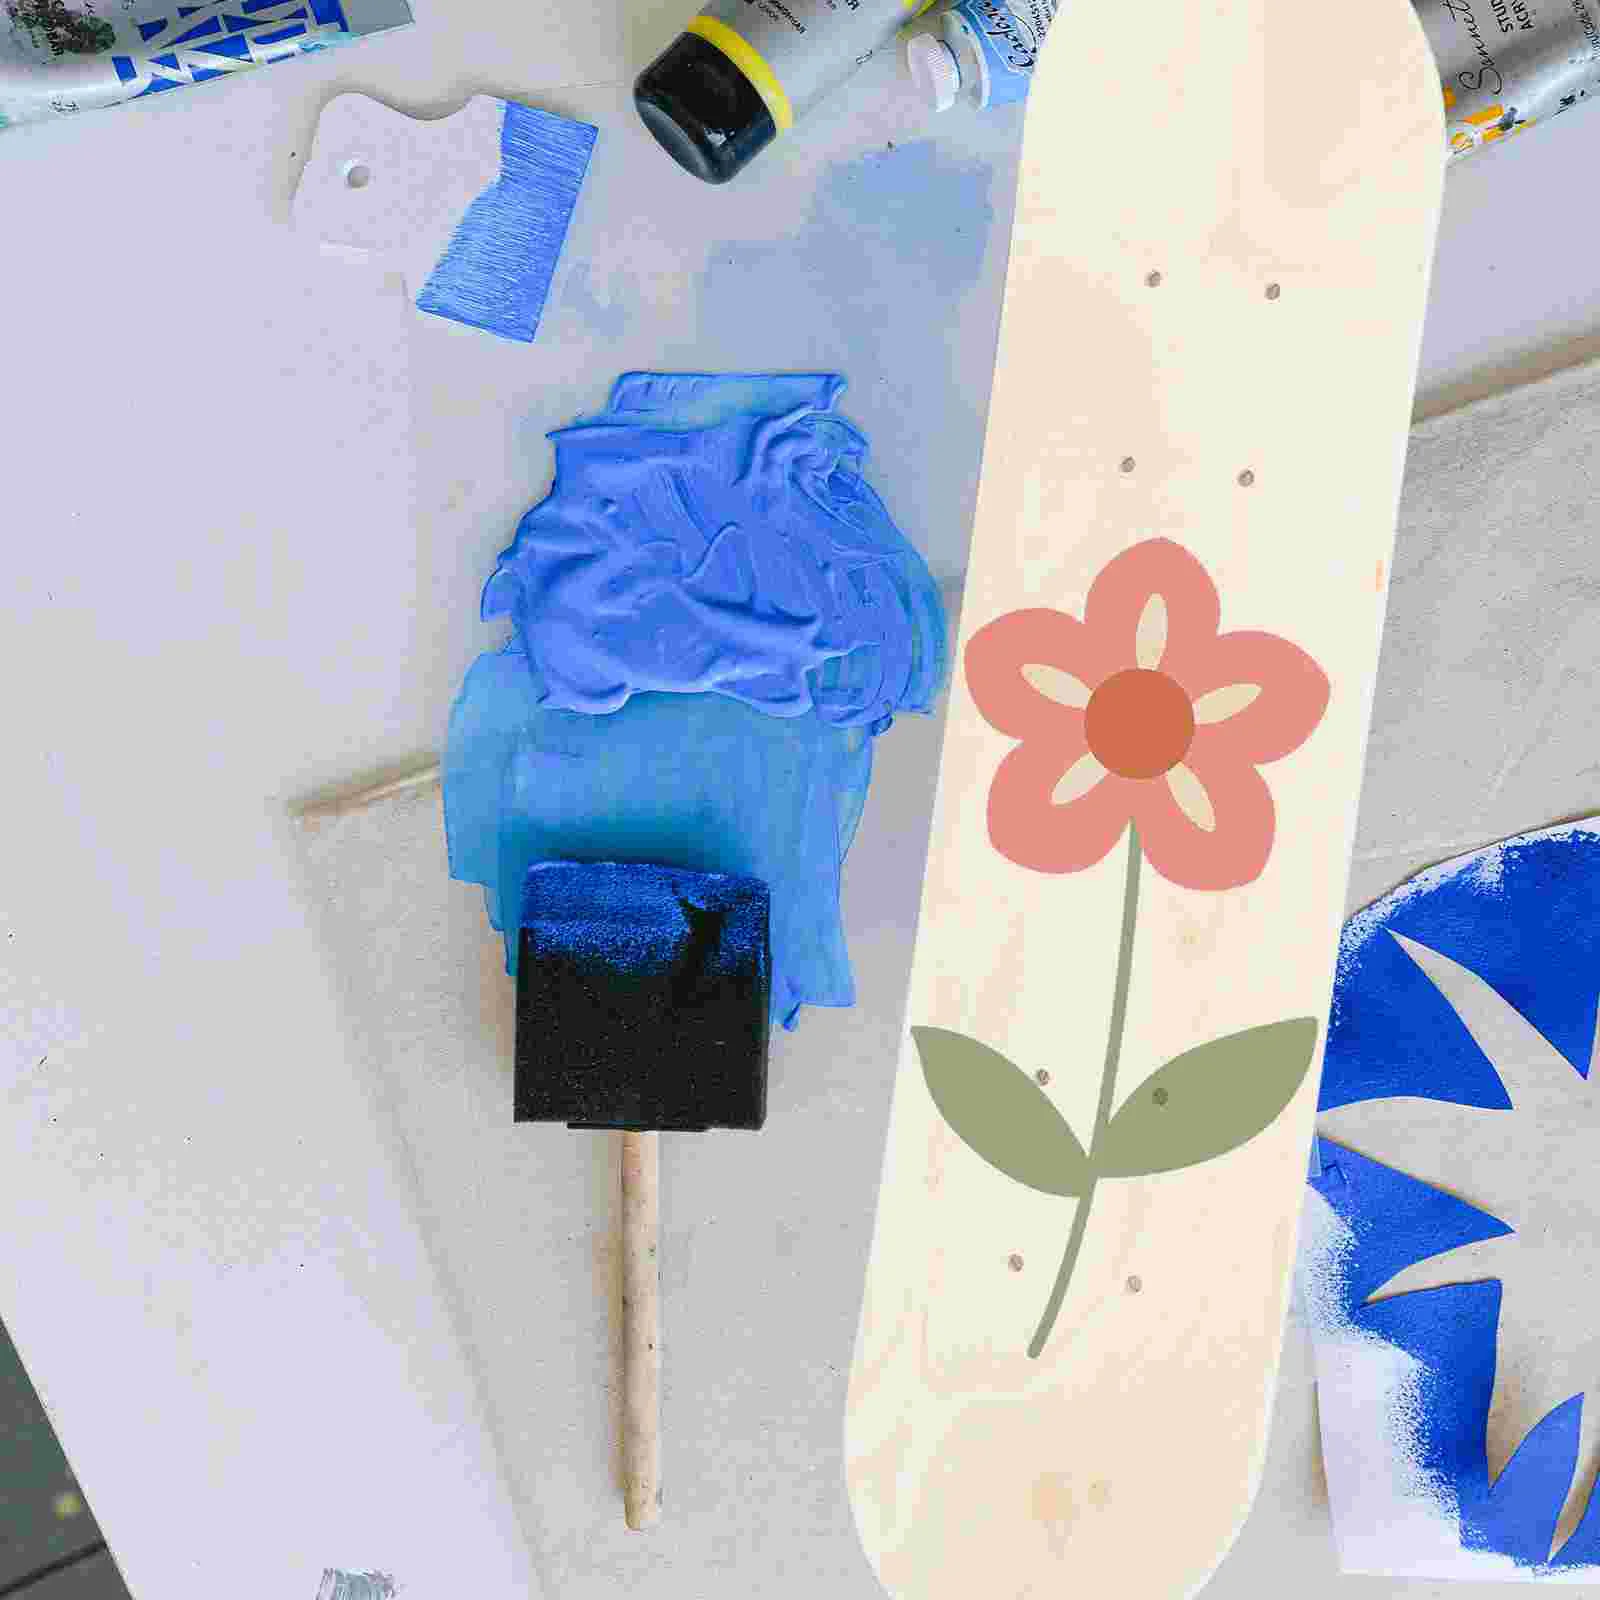 

60cm Skateboard Deck Maple Skate Board Blank Adults Kids DIY Hand-painted Decorative Board Double Rocker